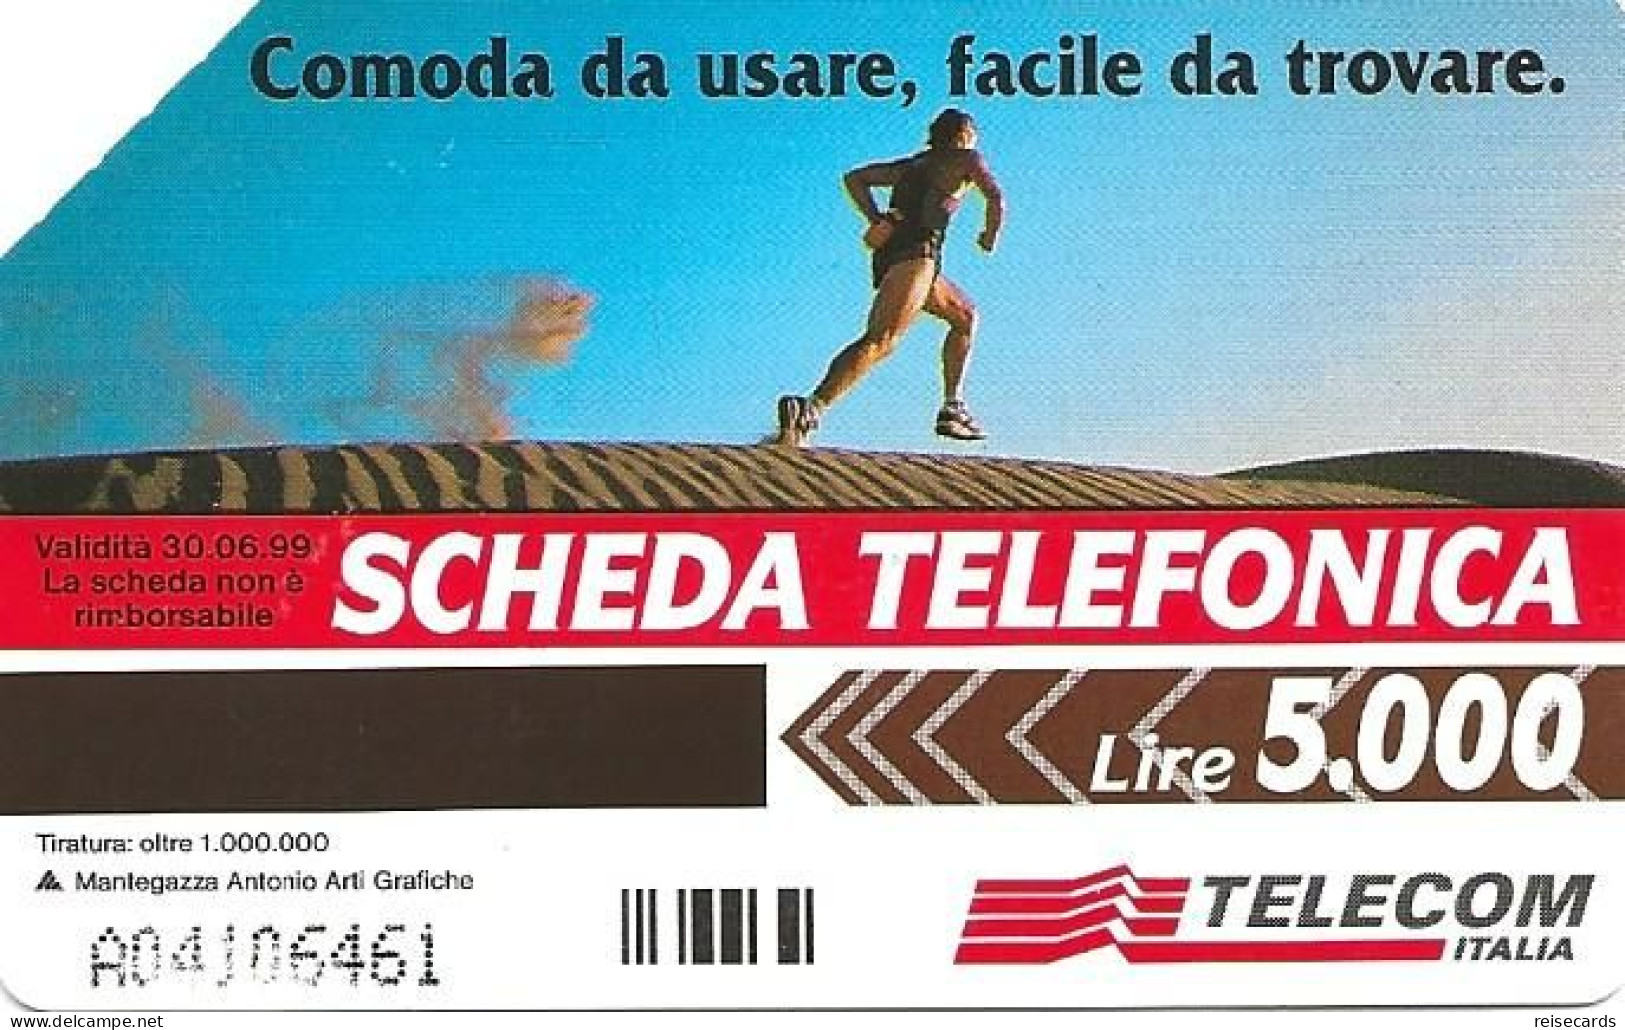 Italy: Telecom Italia - La Scheda Telefonica, Non Cercarla Lontano (A) - Publiques Publicitaires